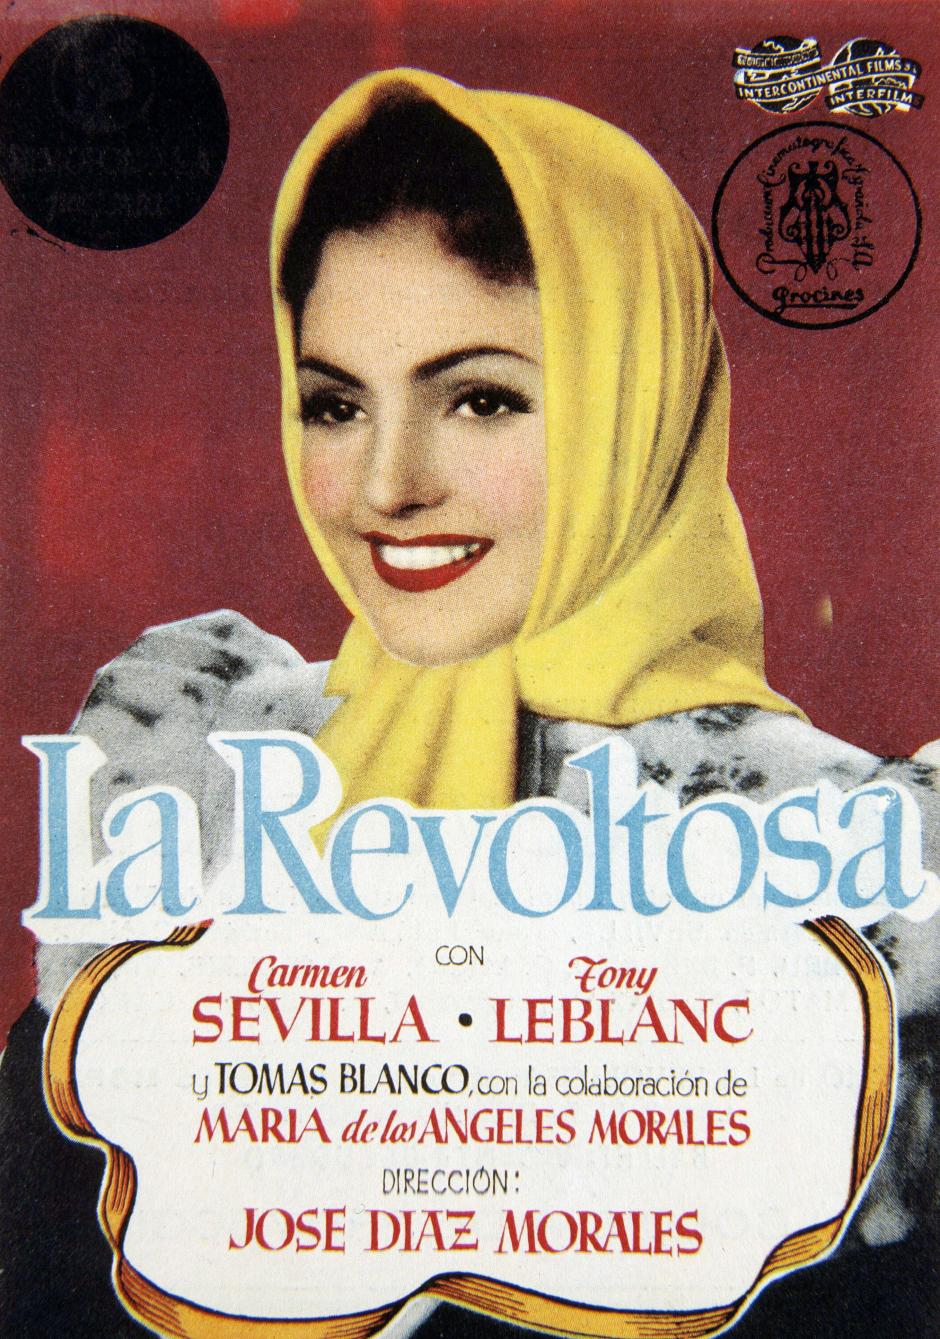 La Revoltosa fue una de las primeras películas de Carmen Sevilla